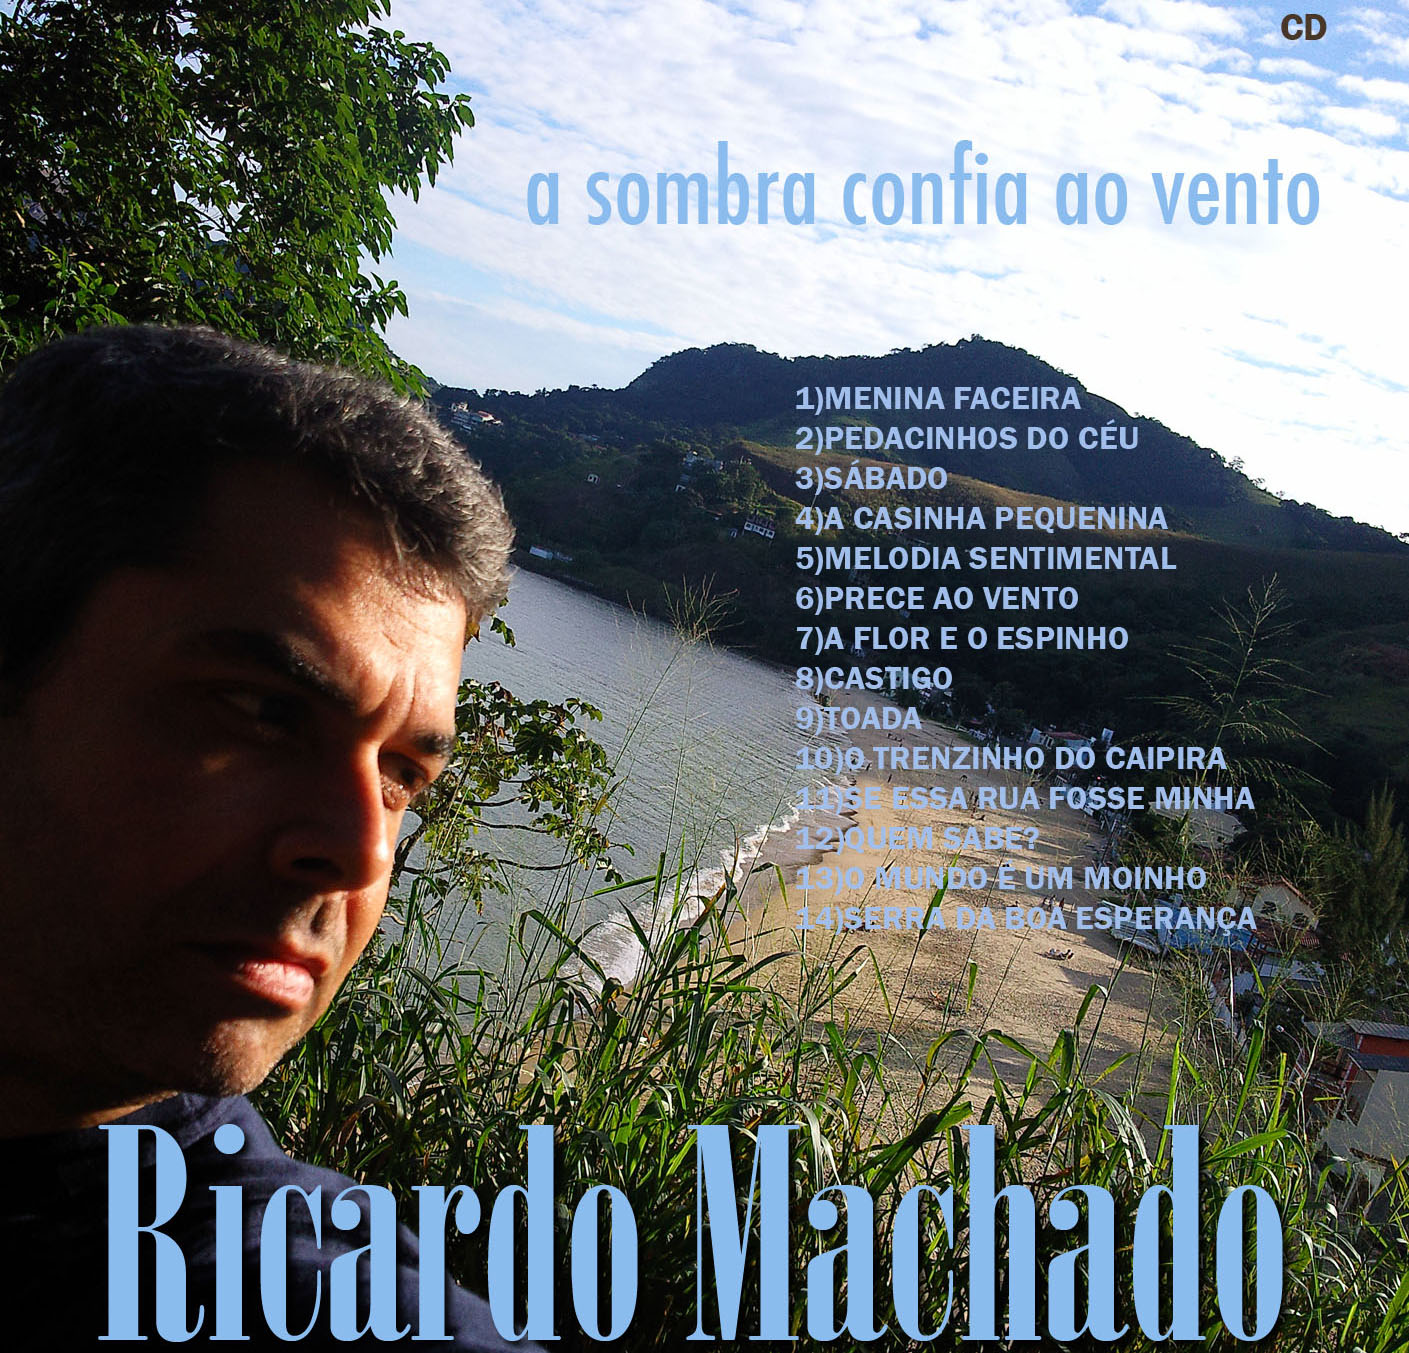 RicardoMachado- CD " A sombra confia ao vento"